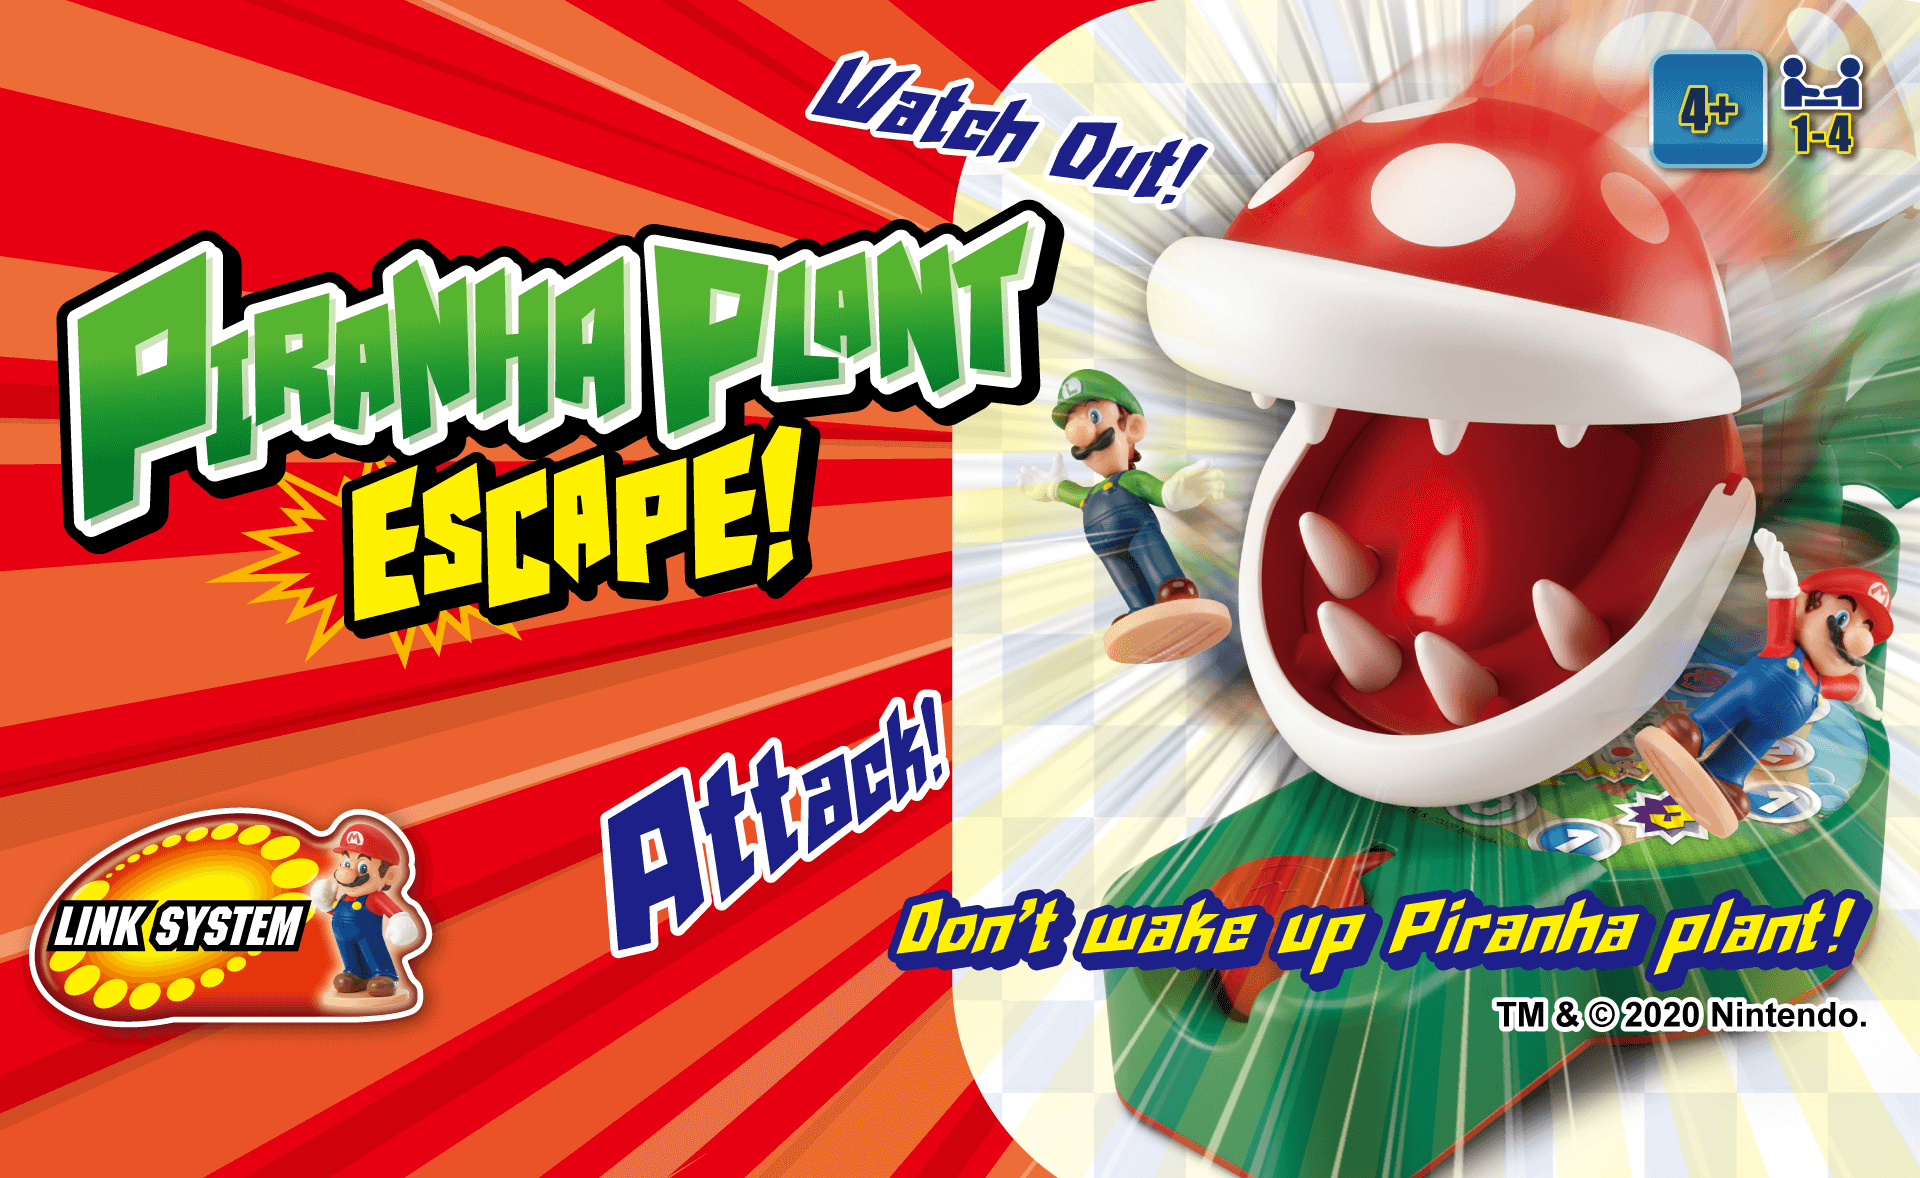 Super Mario™-PIRANHA PLANT ESCAPE! 